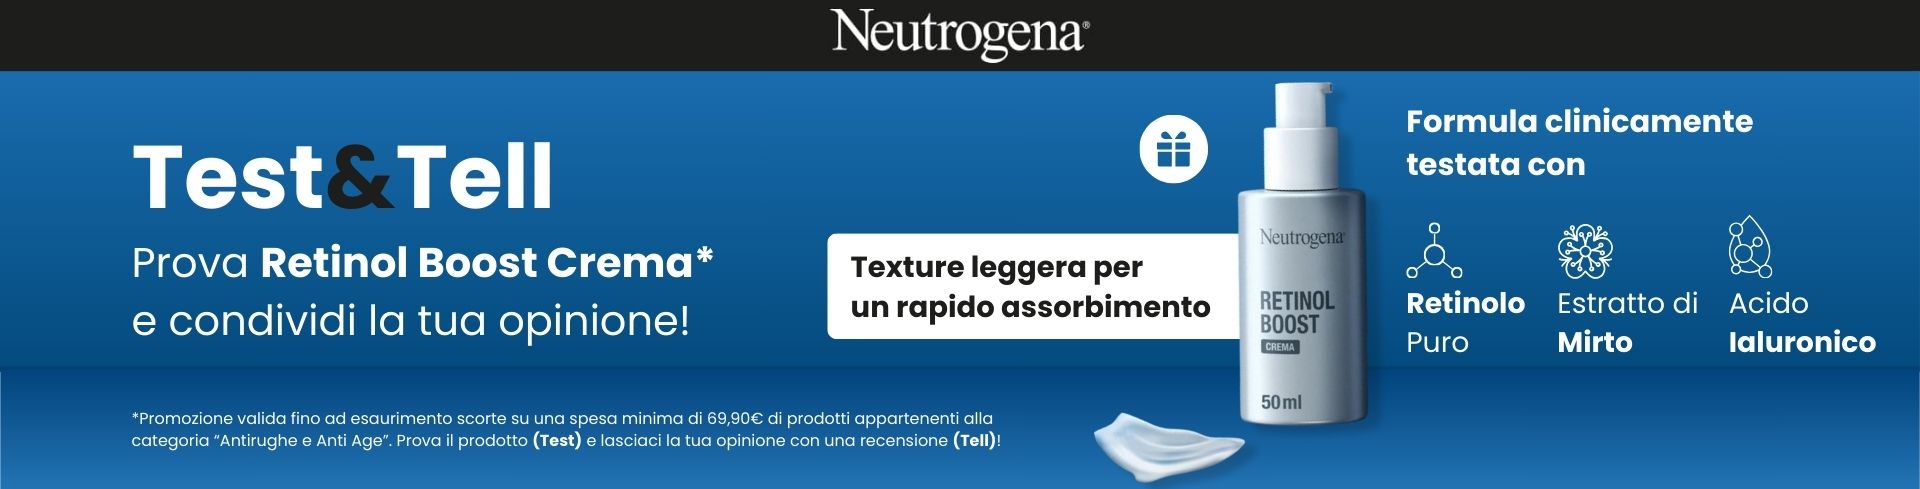 Neutrogena: La tua opinione Conta! Acquista 69,90€ di prodotti Anti-age, ricevi in omaggio Retinol Boost e raccontaci la tua opinione!  desktop